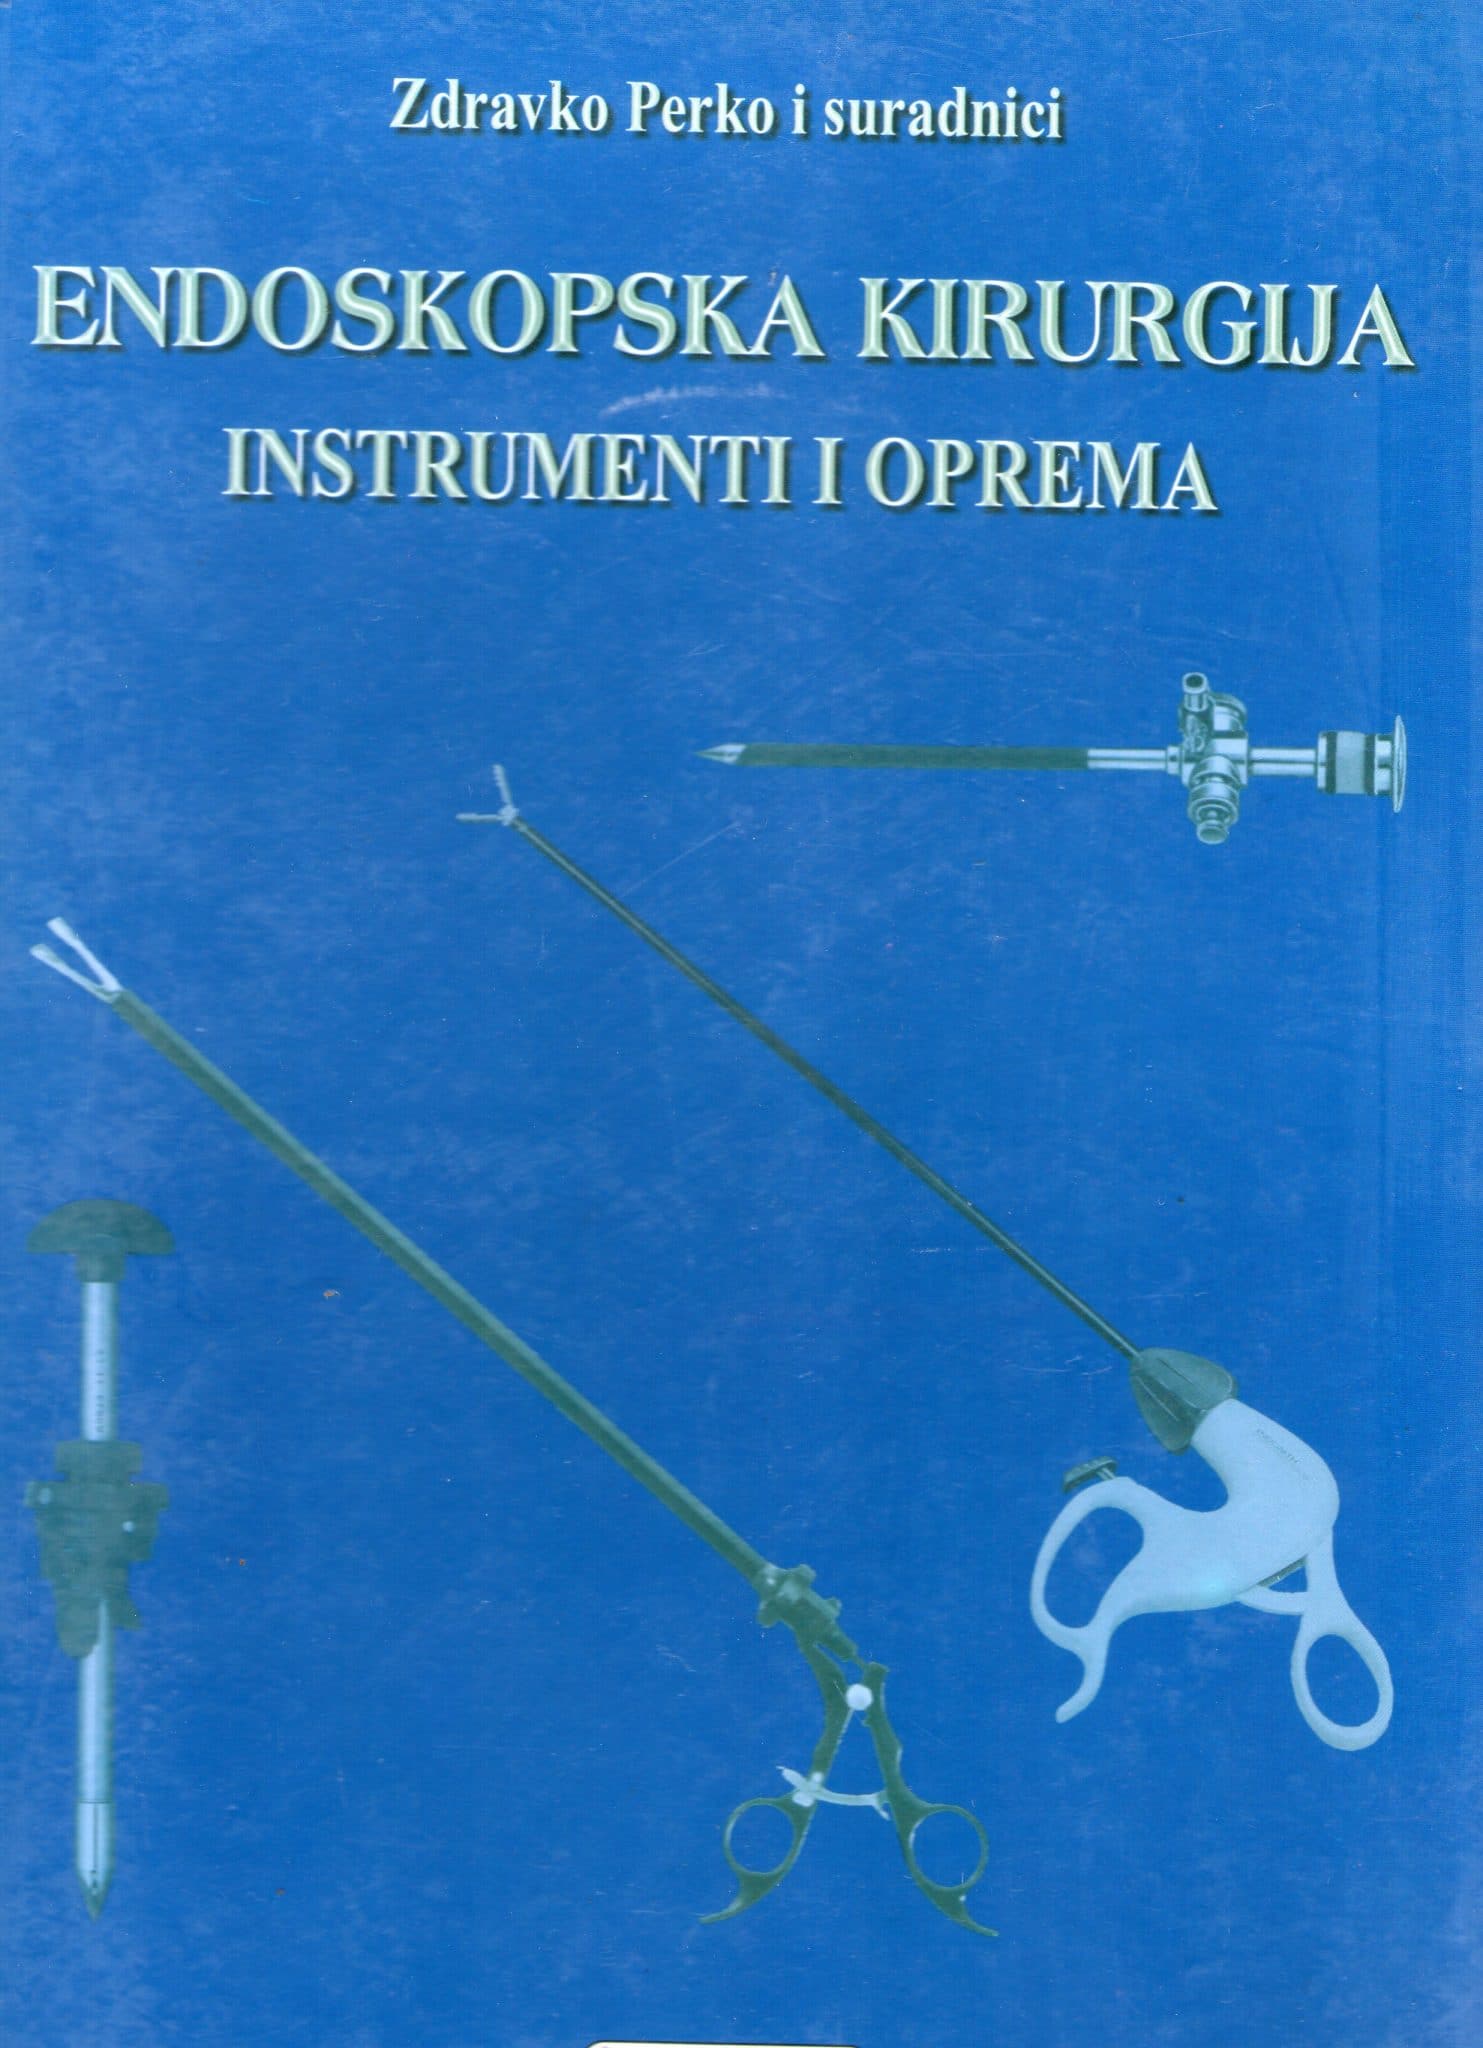 Endoskopska kirurgija Zdravko Perko, suradnici